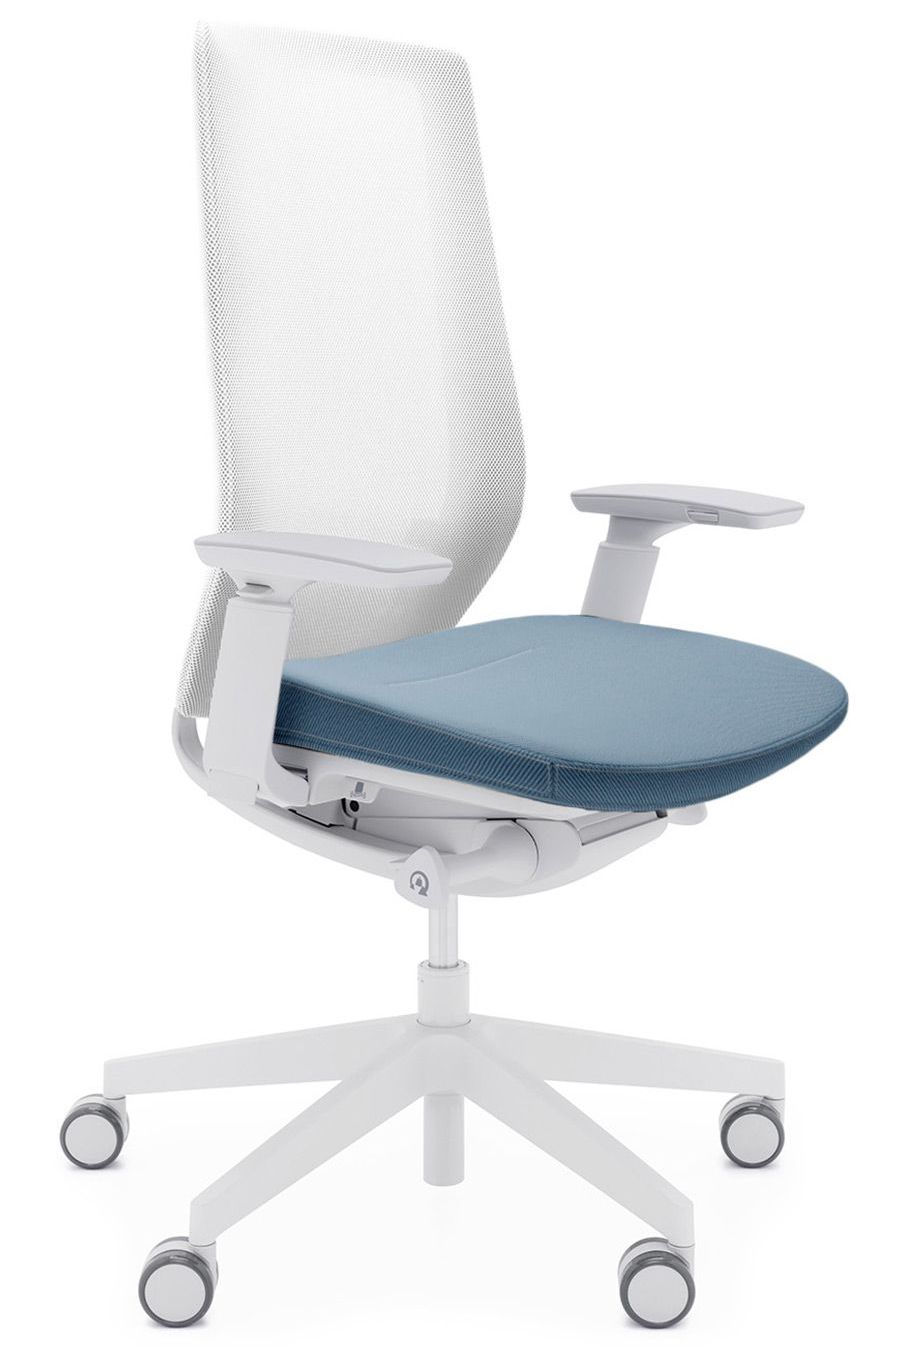 AccisPro to innowacyjna kolekcja krzeseł obrotowych, które zapewniają użytkownikowi wygodę oraz optymalną pozycję ciała. Zainspirowana trendem 